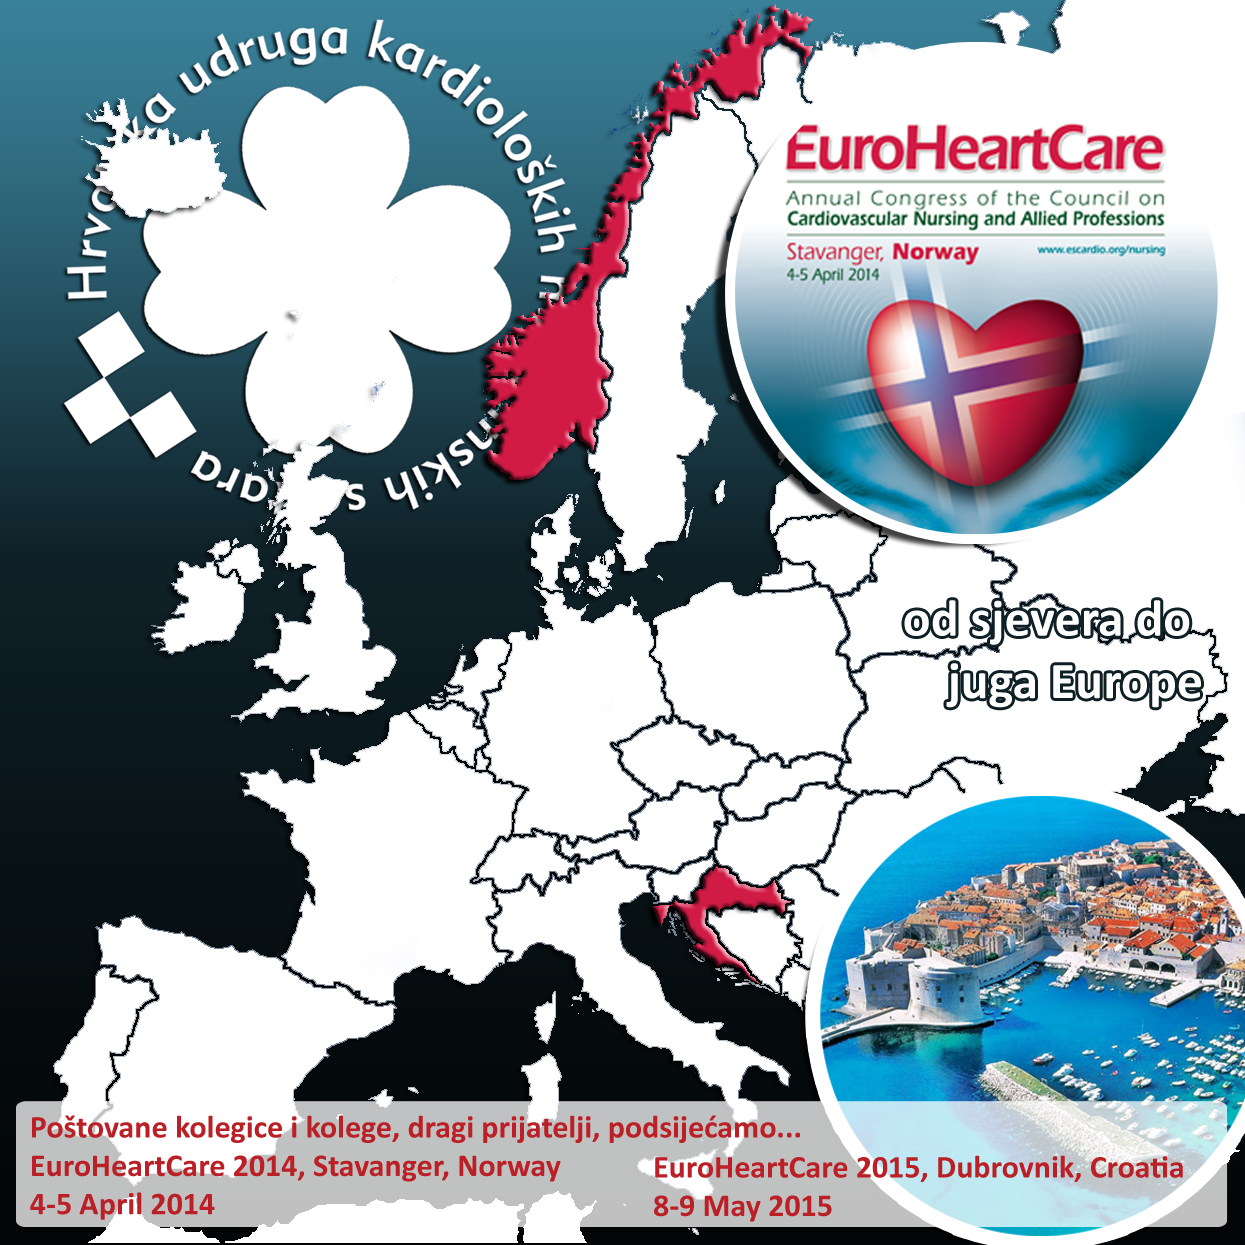 EuroHeartCare 2015, Dubrovnik, Croatia